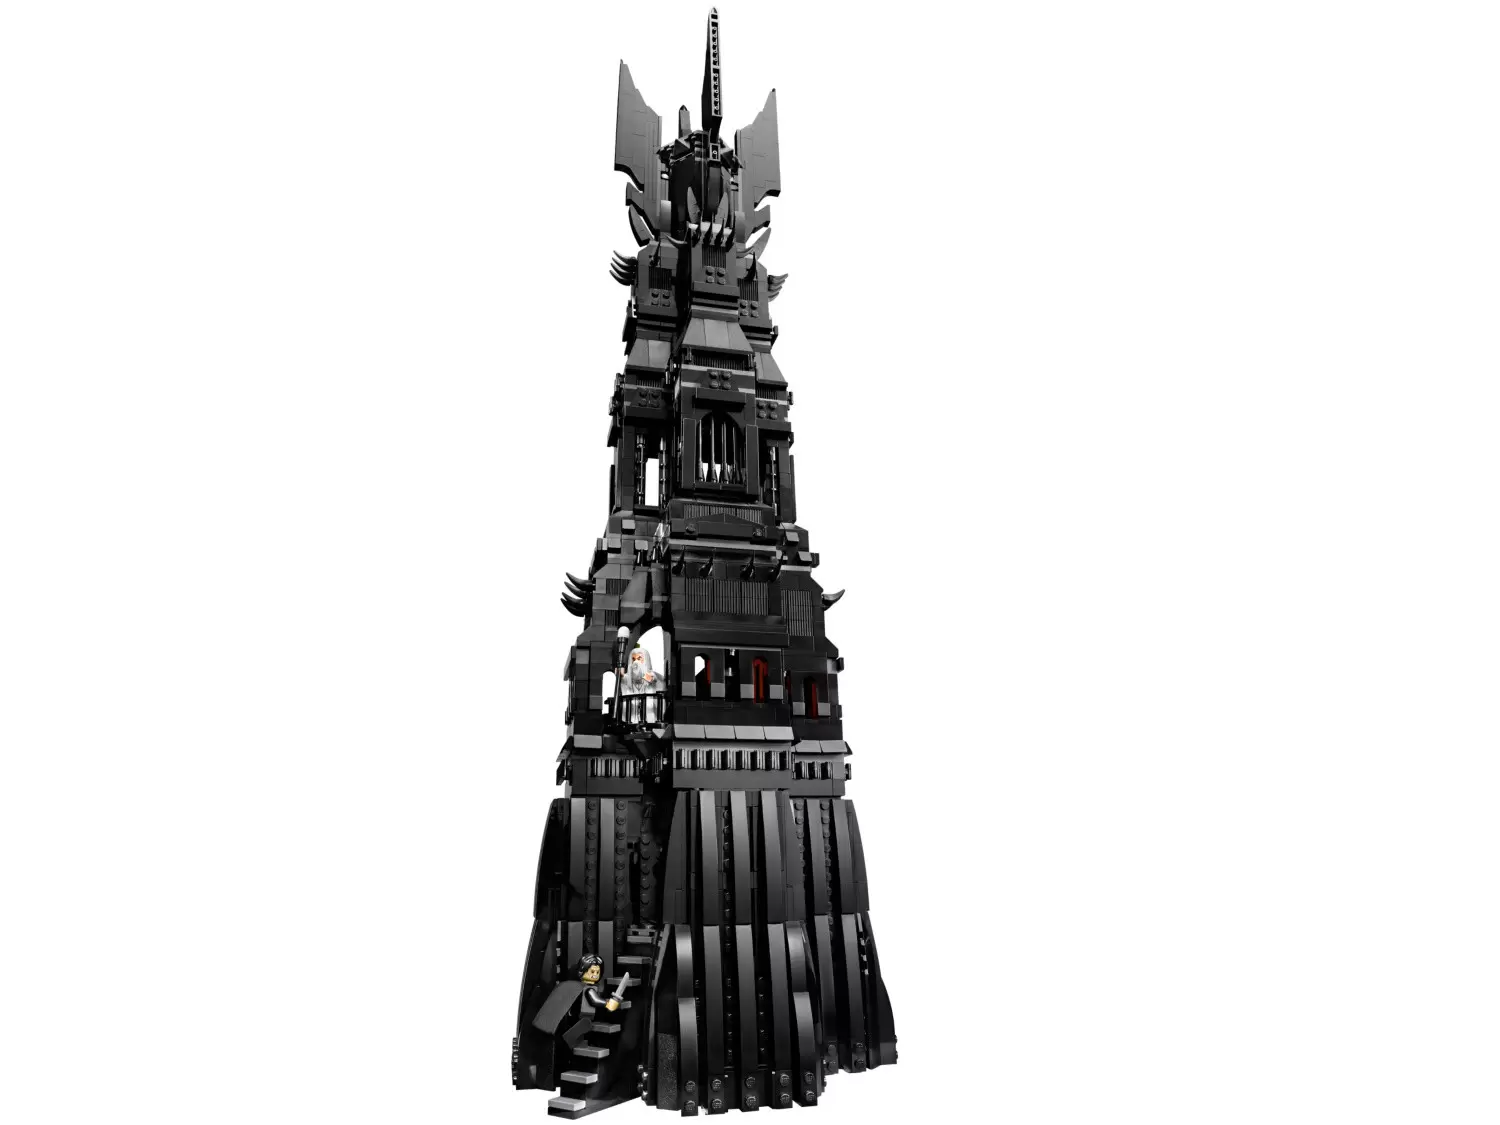 LEGO Le Seigneur des Anneaux - Tower of Orthanc